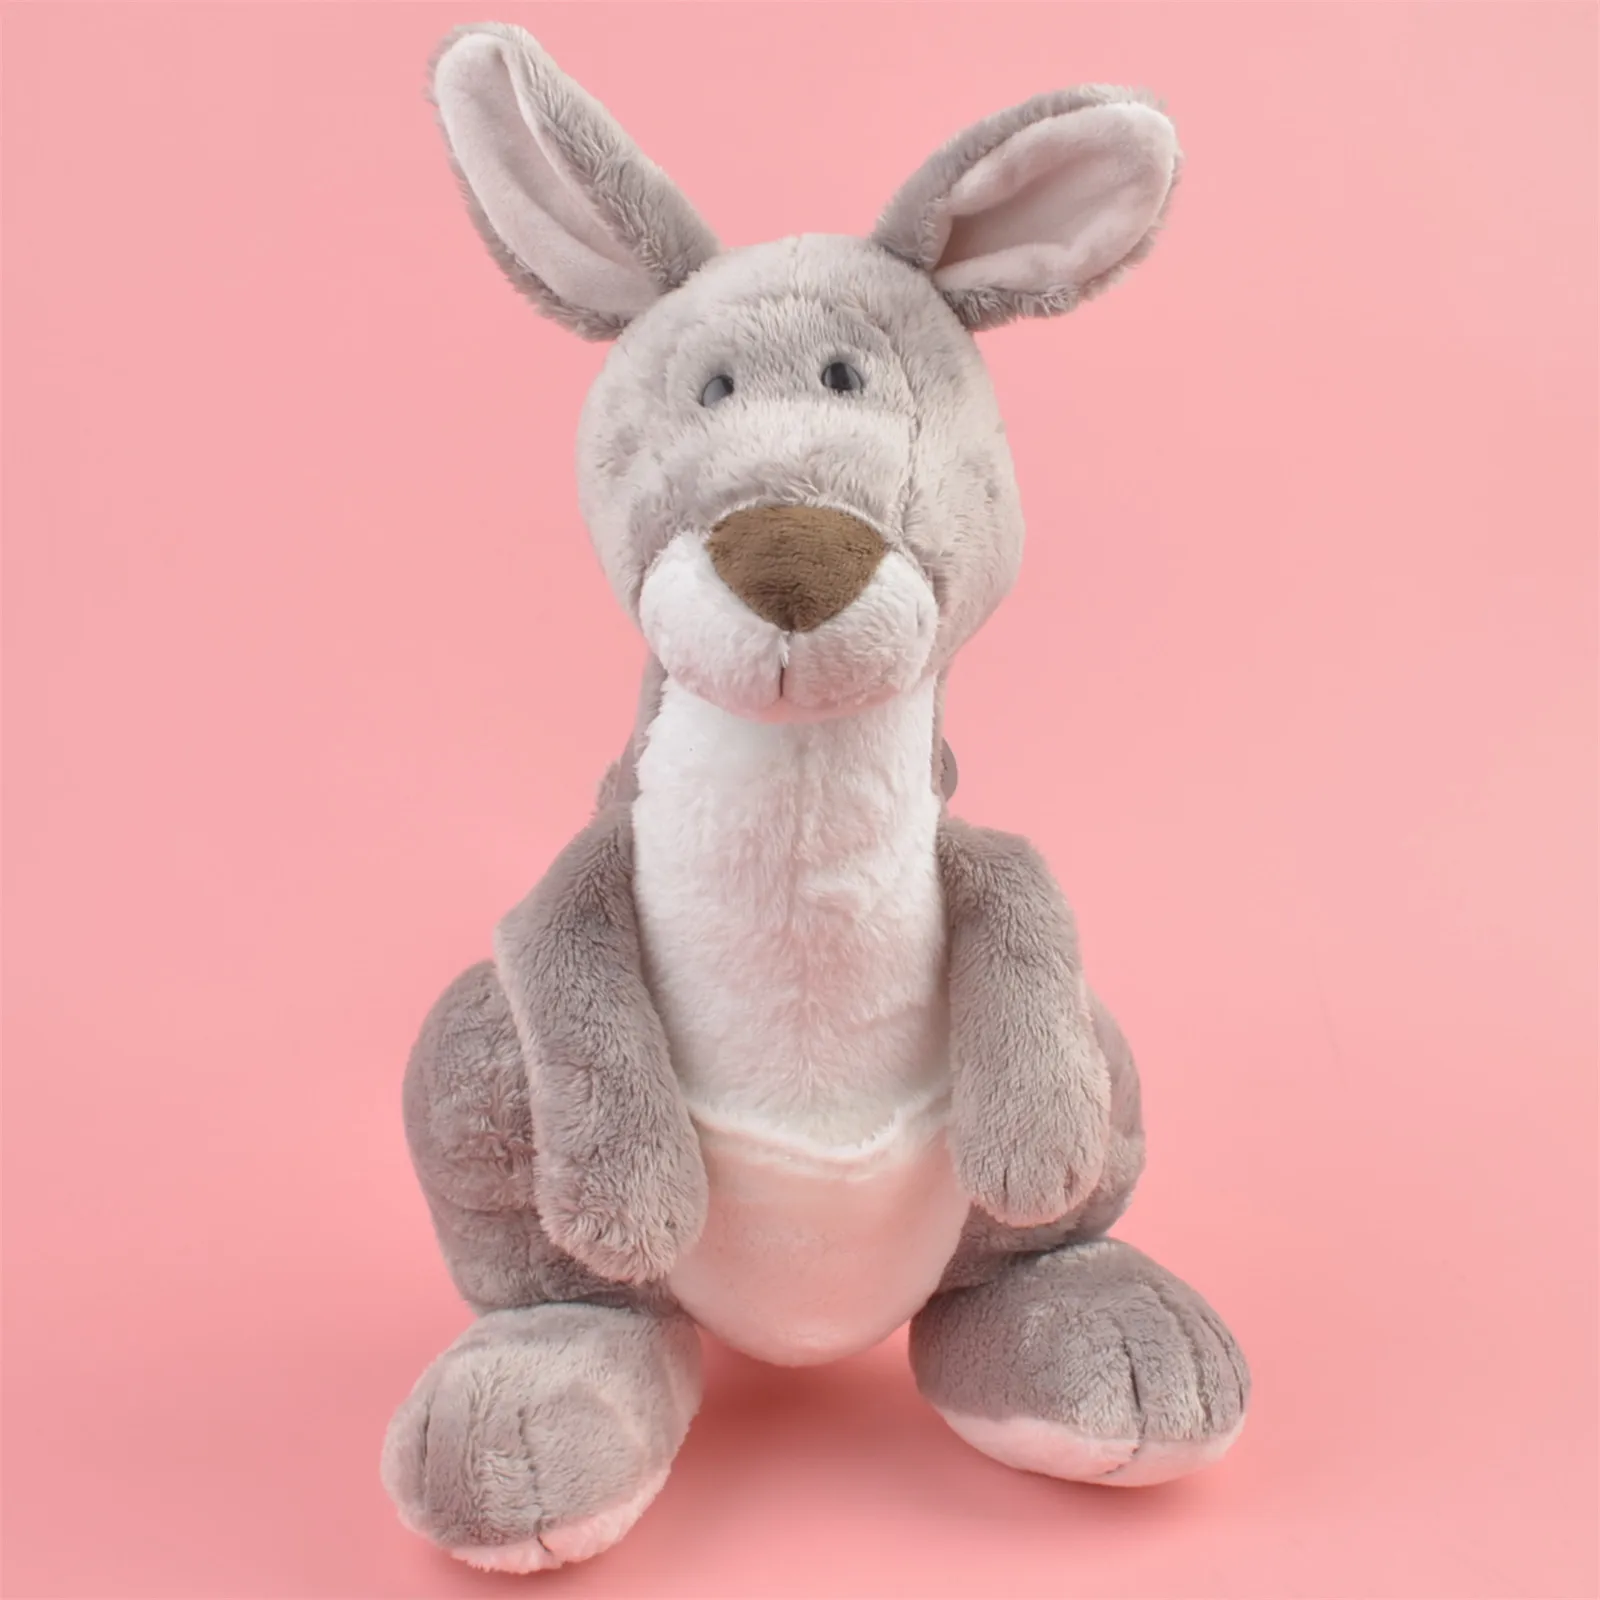 

Мягкая плюшевая игрушка-кенгуру 35 см, детский подарок, мягкая игрушка для детей, оптовая продажа с бесплатной доставкой